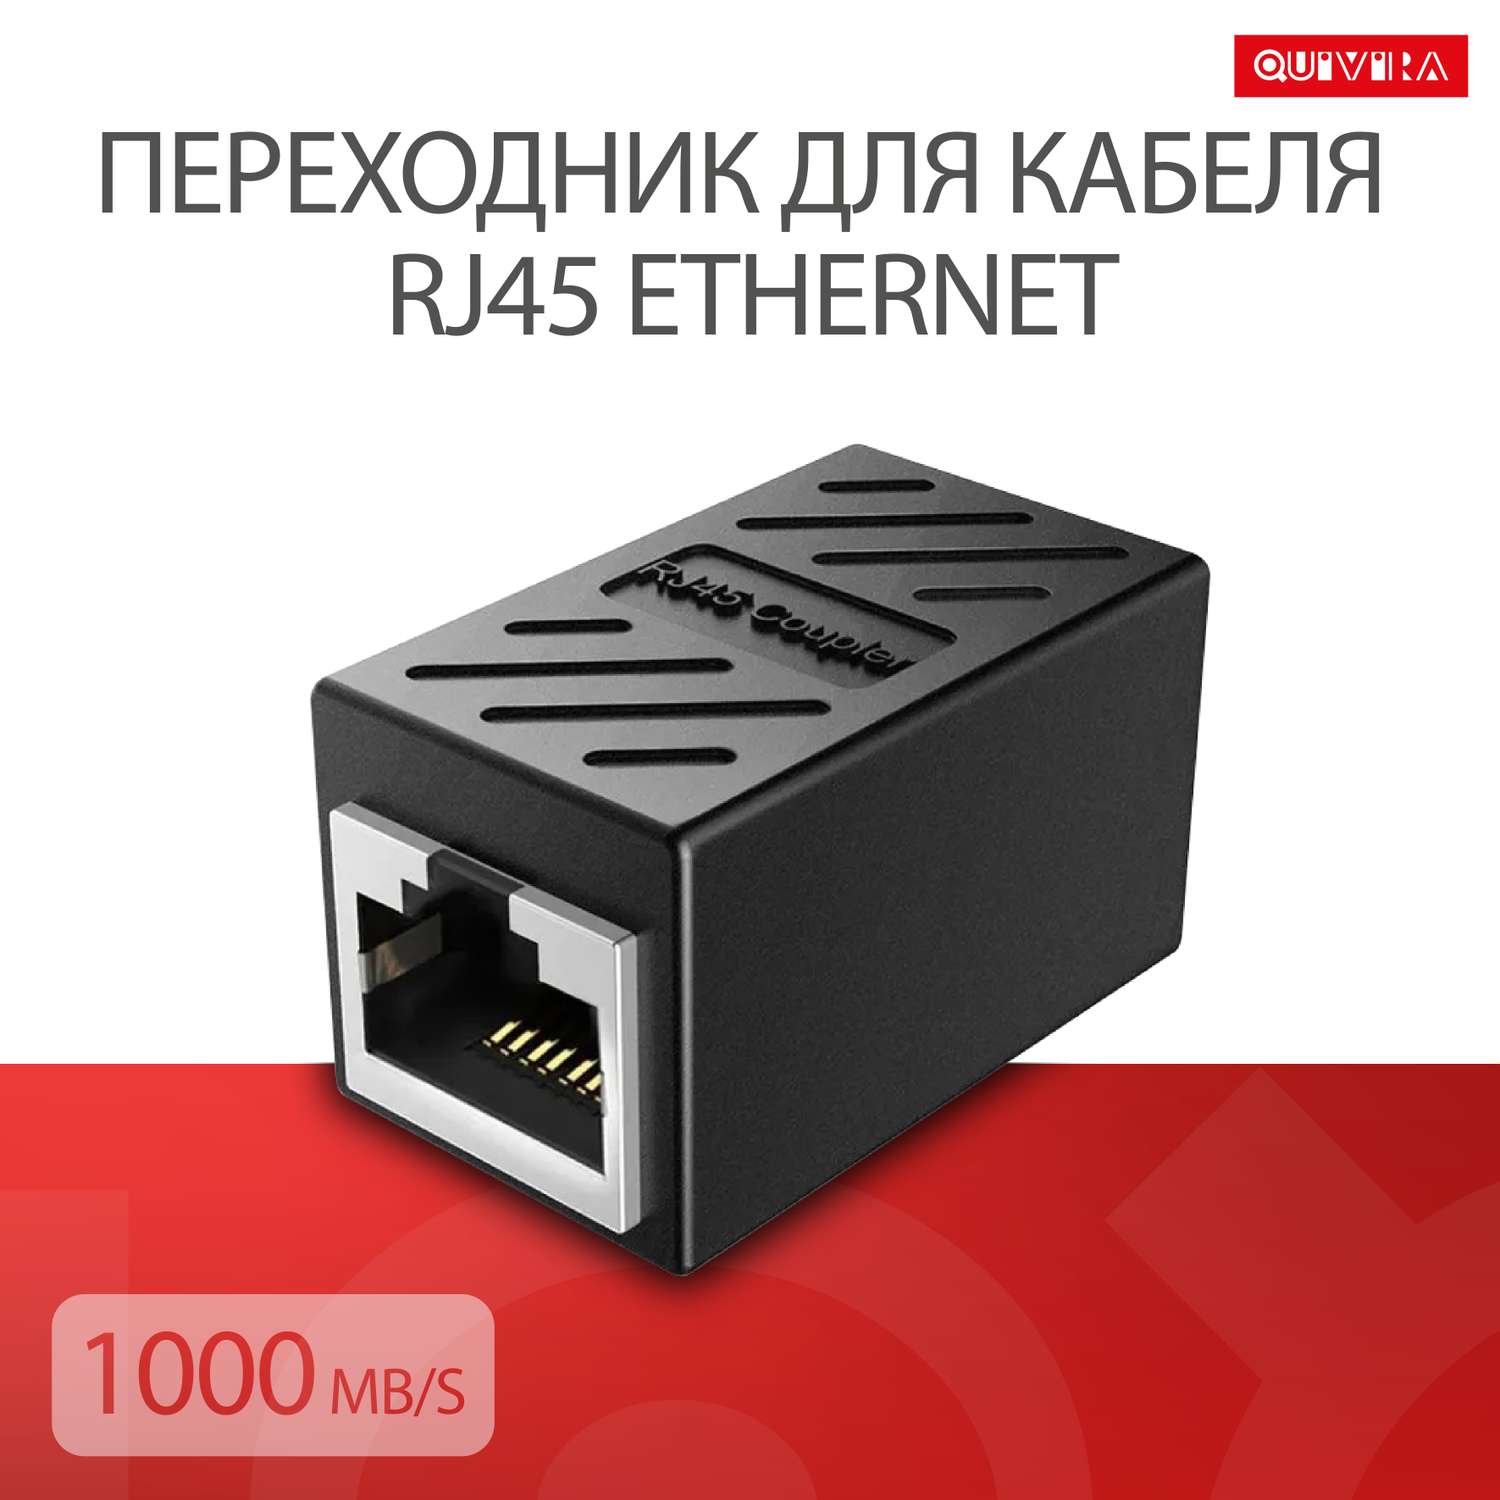 Коннектор QUIVIRA Переходник для кабеля RJ45 Ethernet 1000Mb/s / Черный гнездо - фото 1